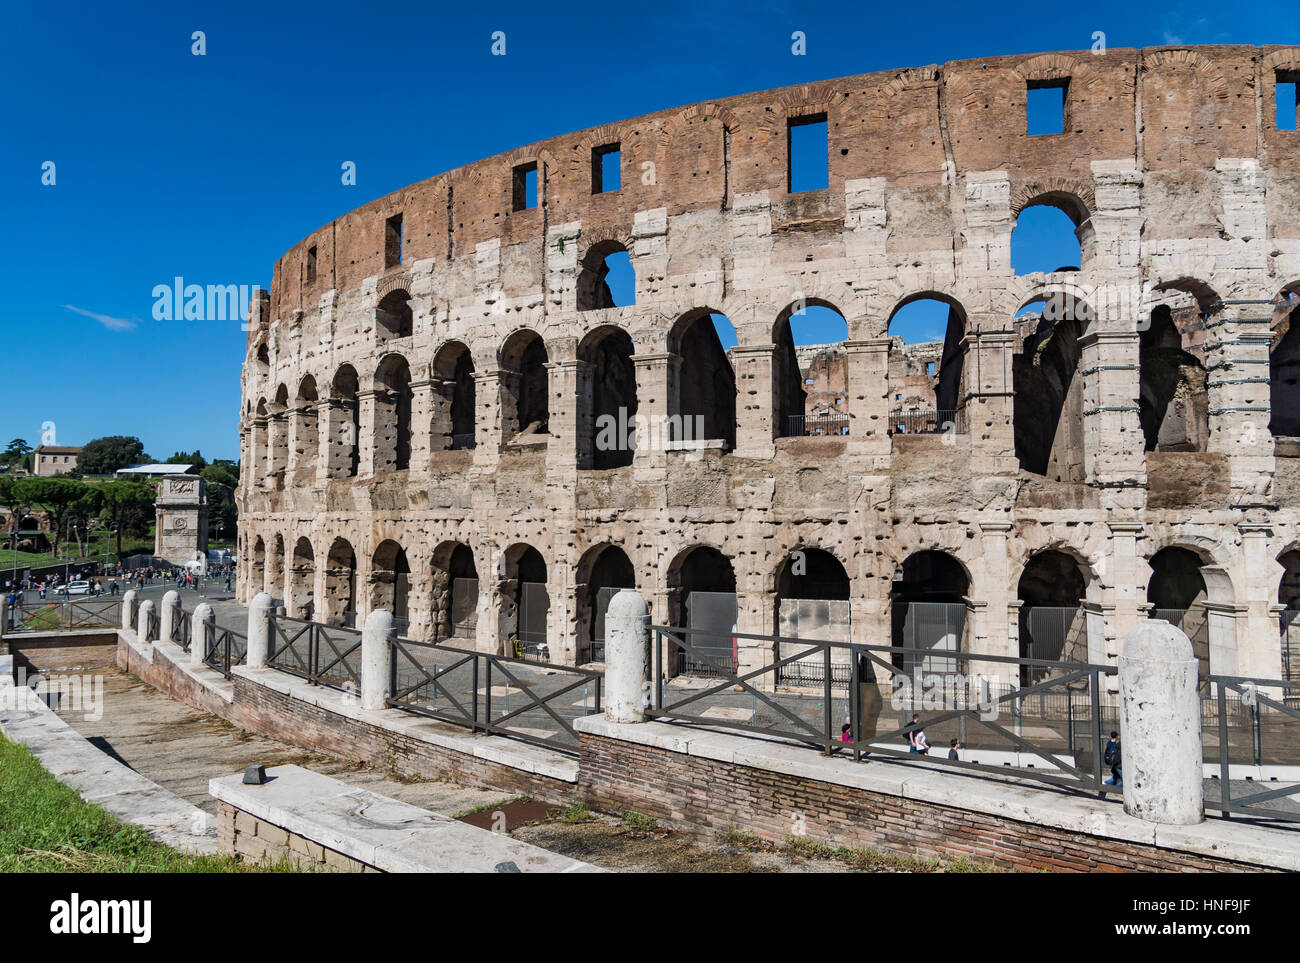 Colloseum Rome Italy Stock Photo